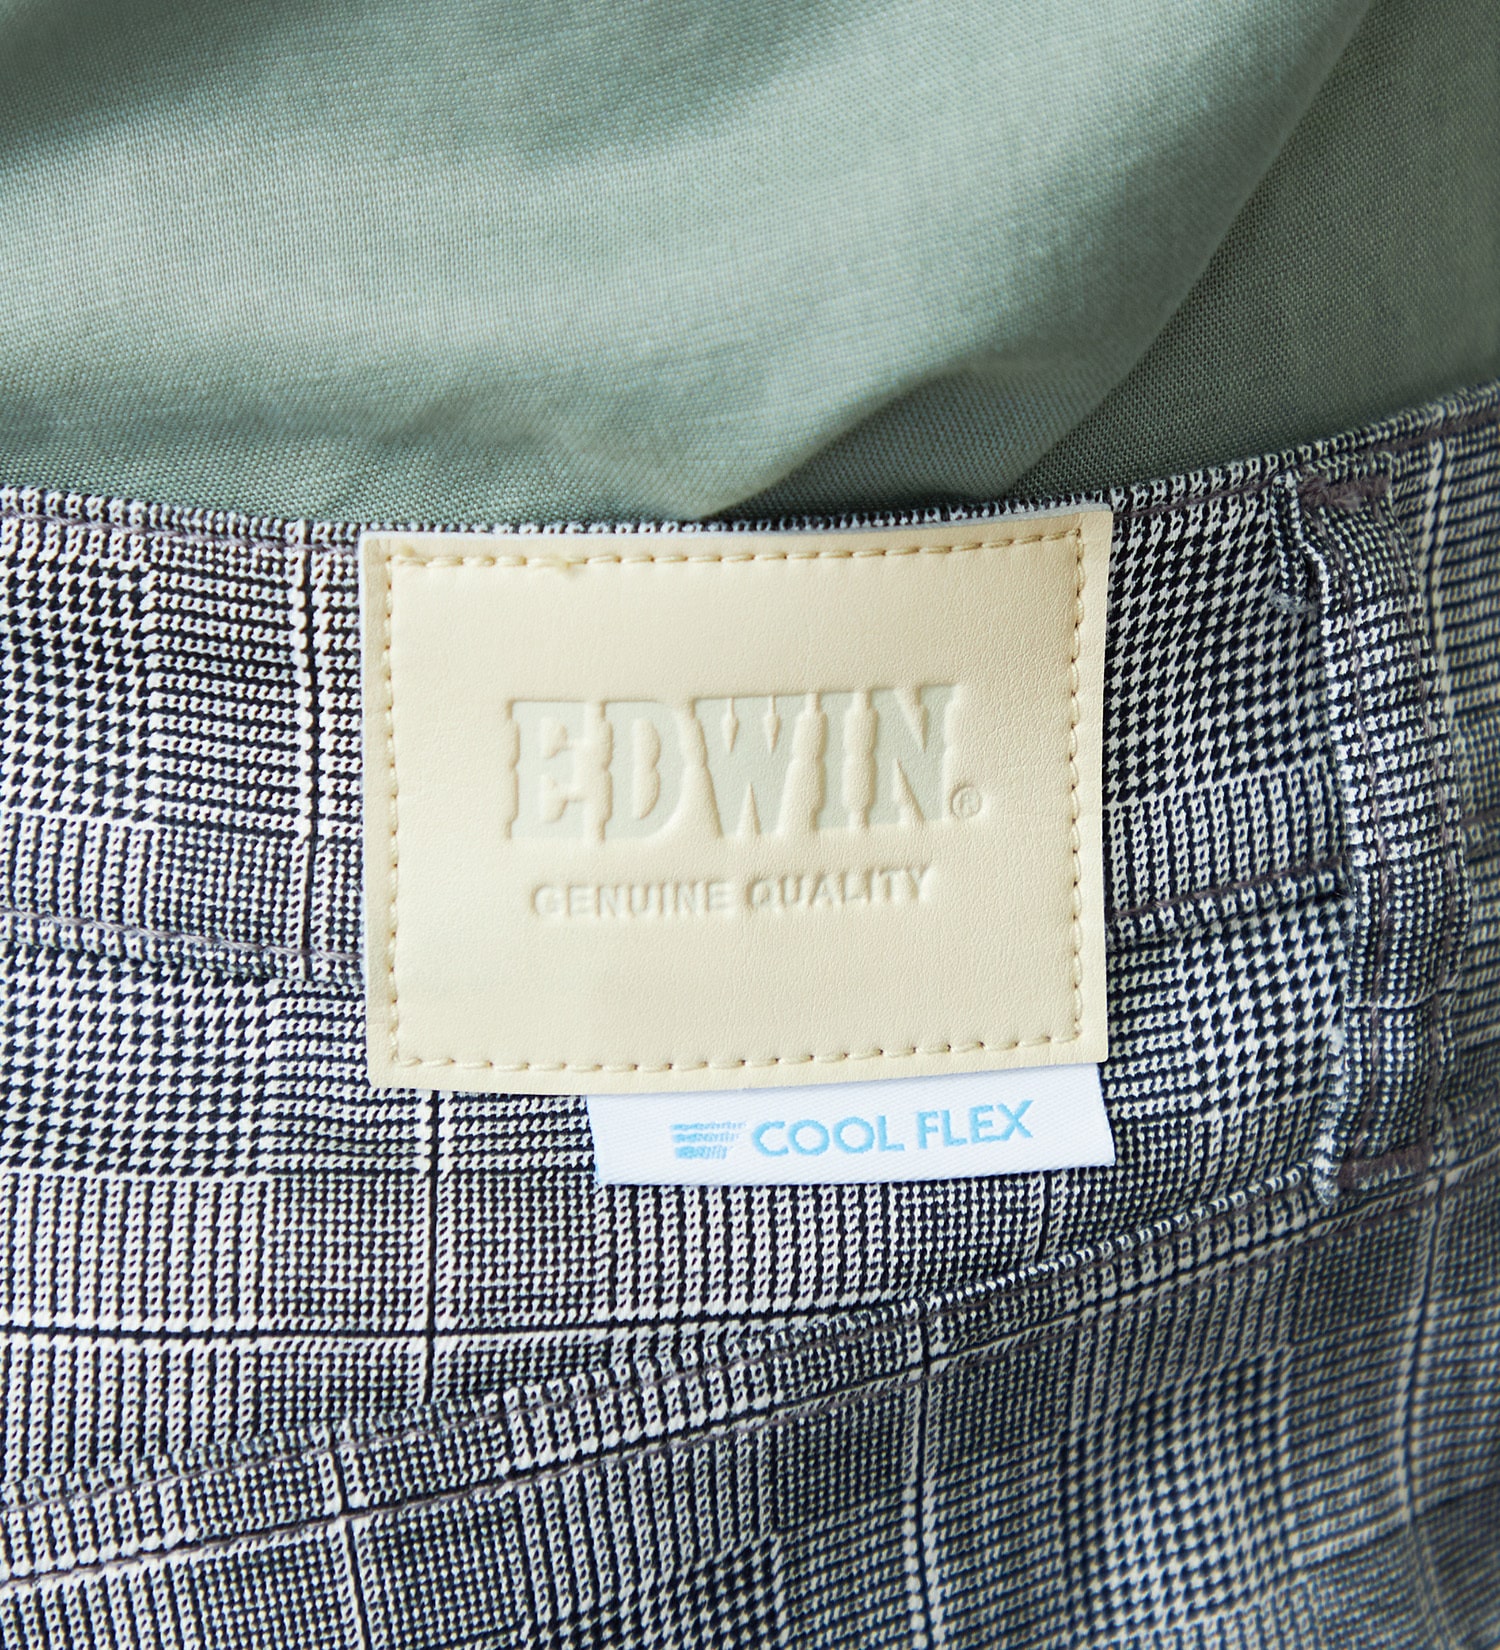 EDWIN(エドウイン)の【涼】EDWIN COOLFLEX 二重織メッシュ構造 レギュラーストレートパンツ 【ドライタッチ/吸汗速乾】|パンツ/パンツ/メンズ|チェック1